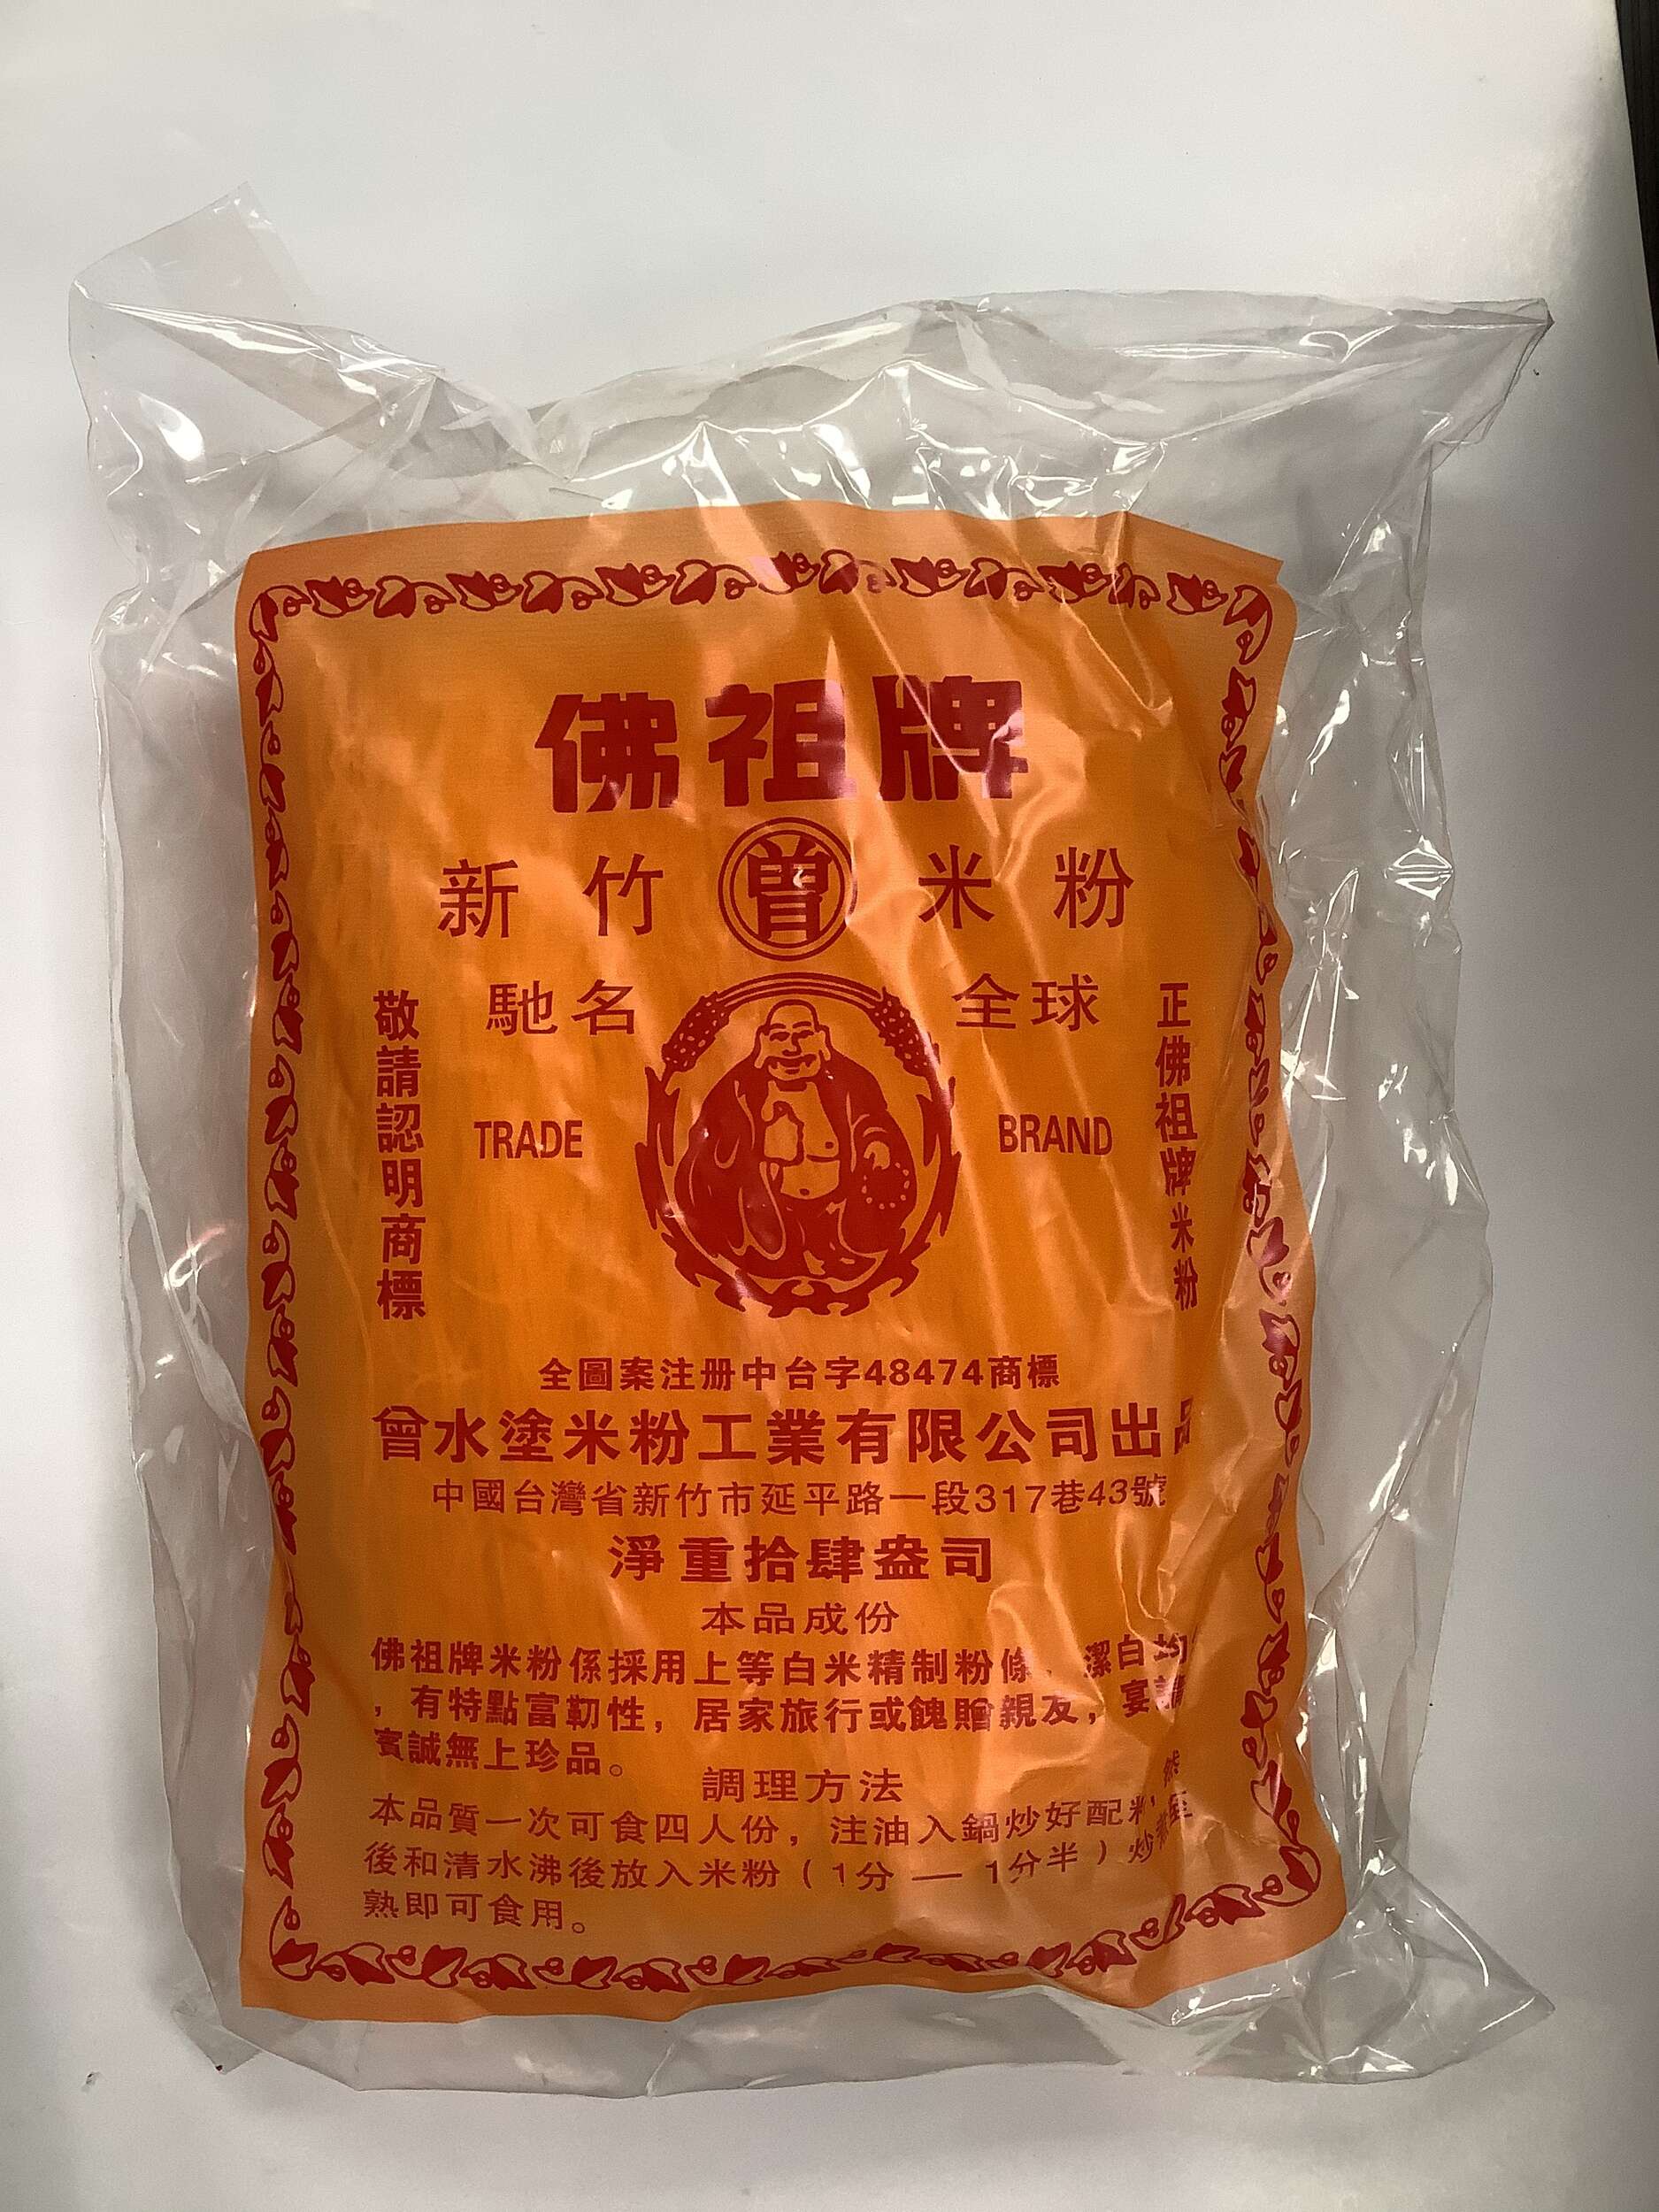 Barra de arroz de la famosa marca Buddha - 14 oz